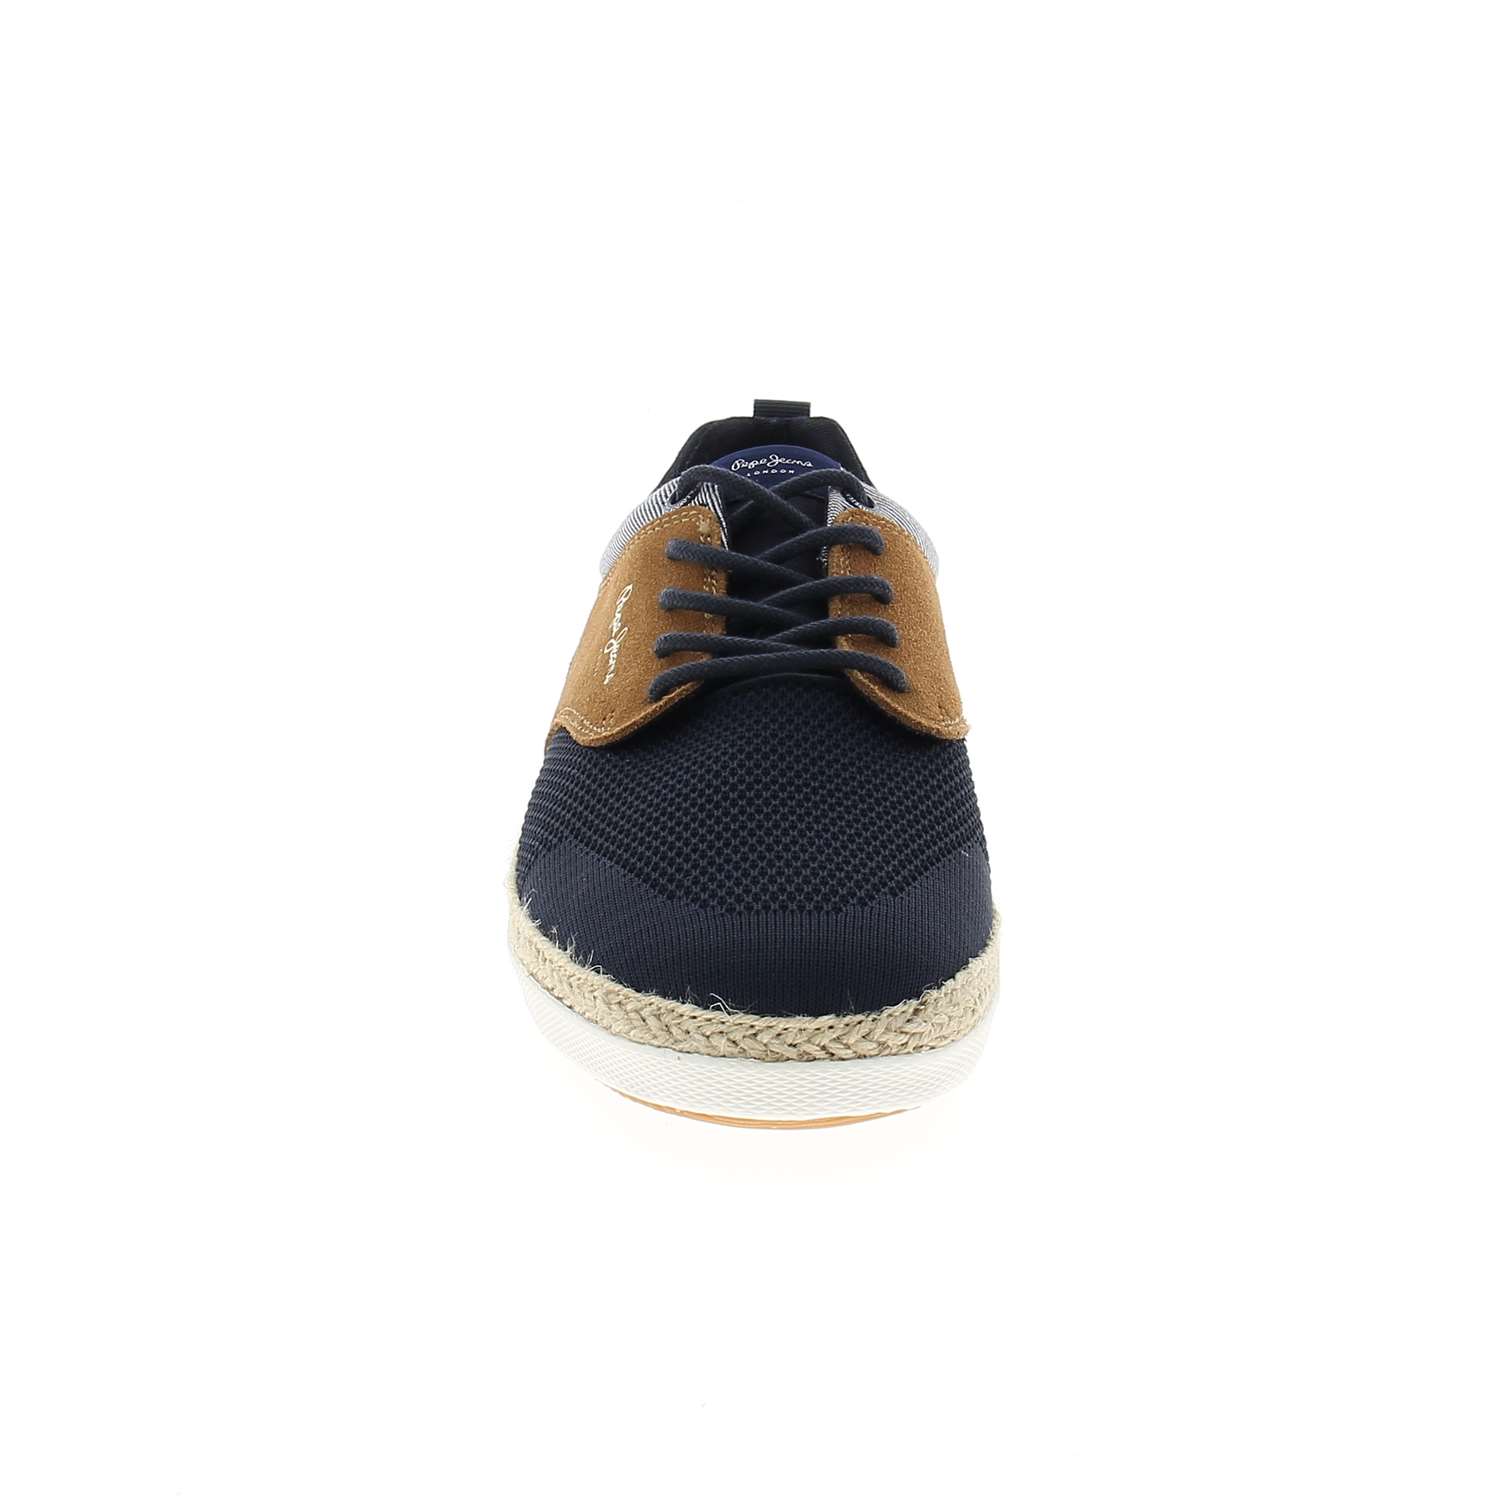 03 - MAUIB - PEPE JEANS - Chaussures à lacets - Textile